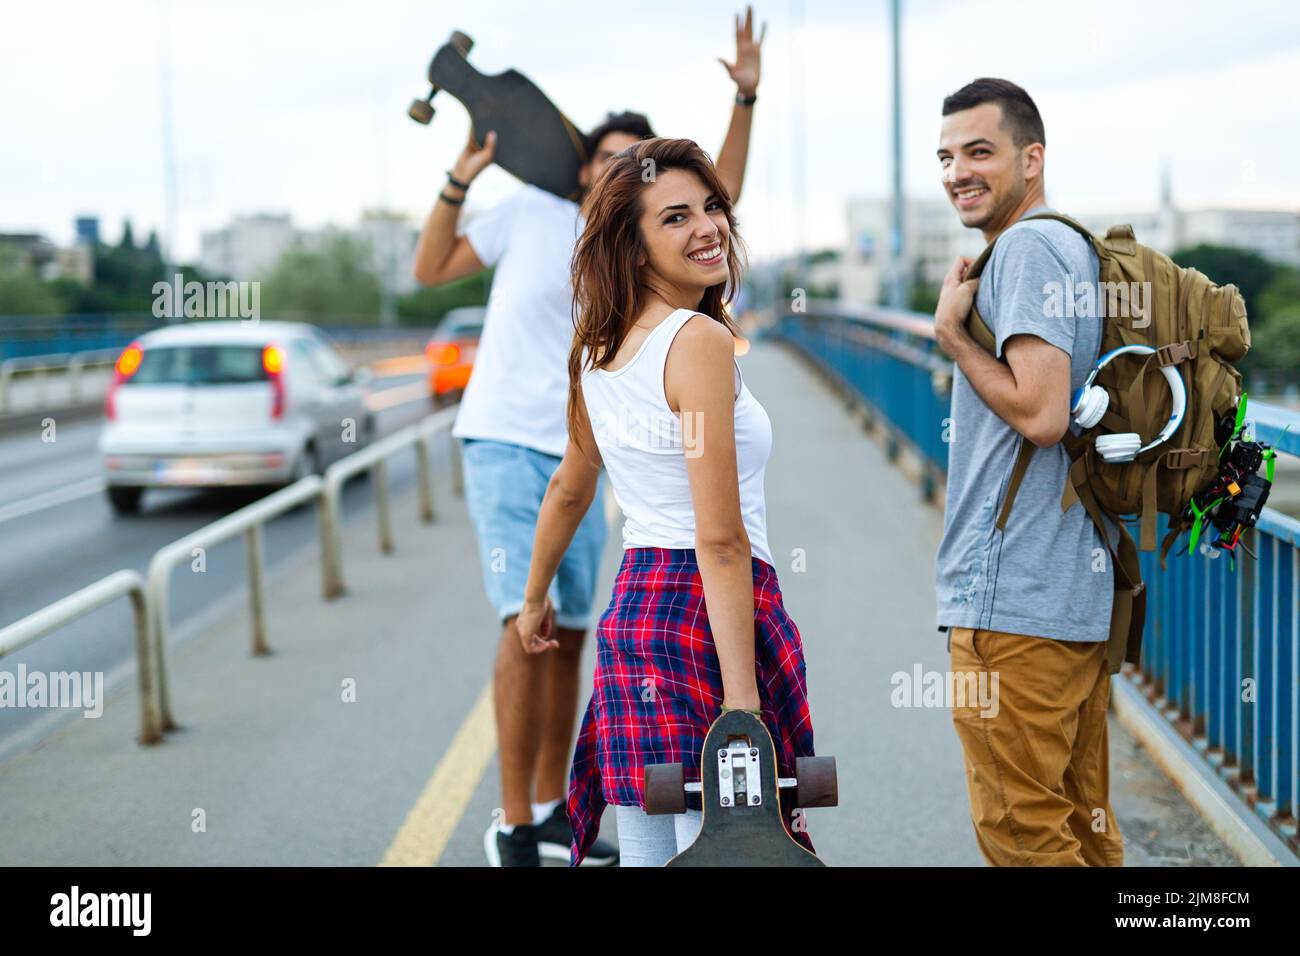 Un grupo de adolescentes felices pasan el rato juntos y disfrutan del skateboard al aire libre. Foto de stock